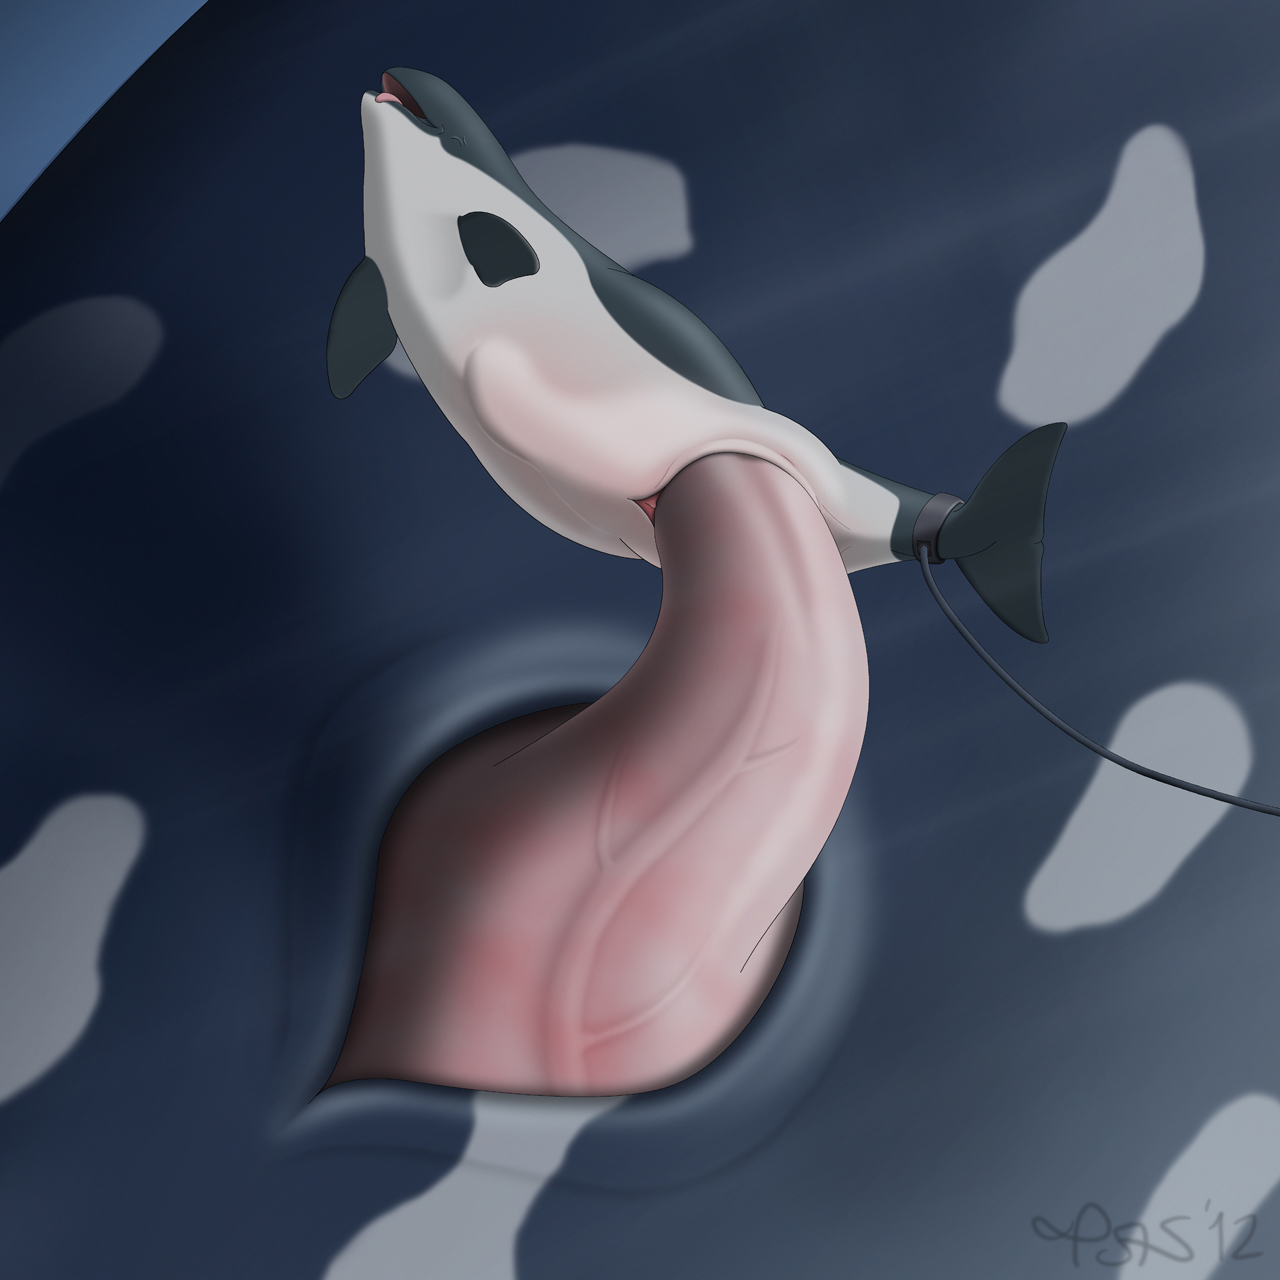 сколько длится оргазм у дельфинов фото 91